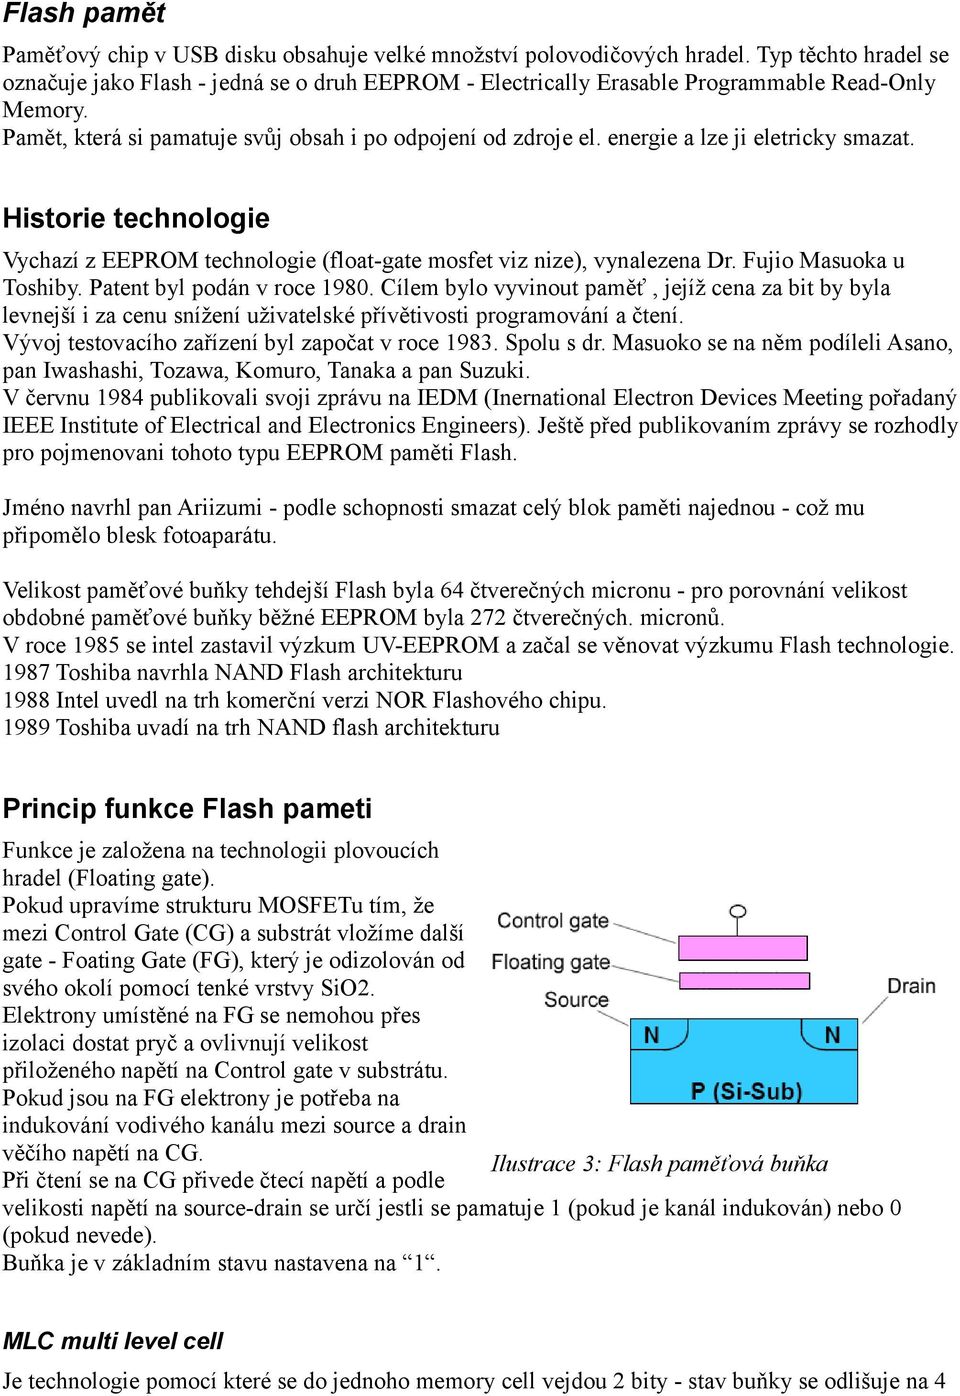 energie a lze ji eletricky smazat. Historie technologie Vychazí z EEPROM technologie (float-gate mosfet viz nize), vynalezena Dr. Fujio Masuoka u Toshiby. Patent byl podán v roce 1980.